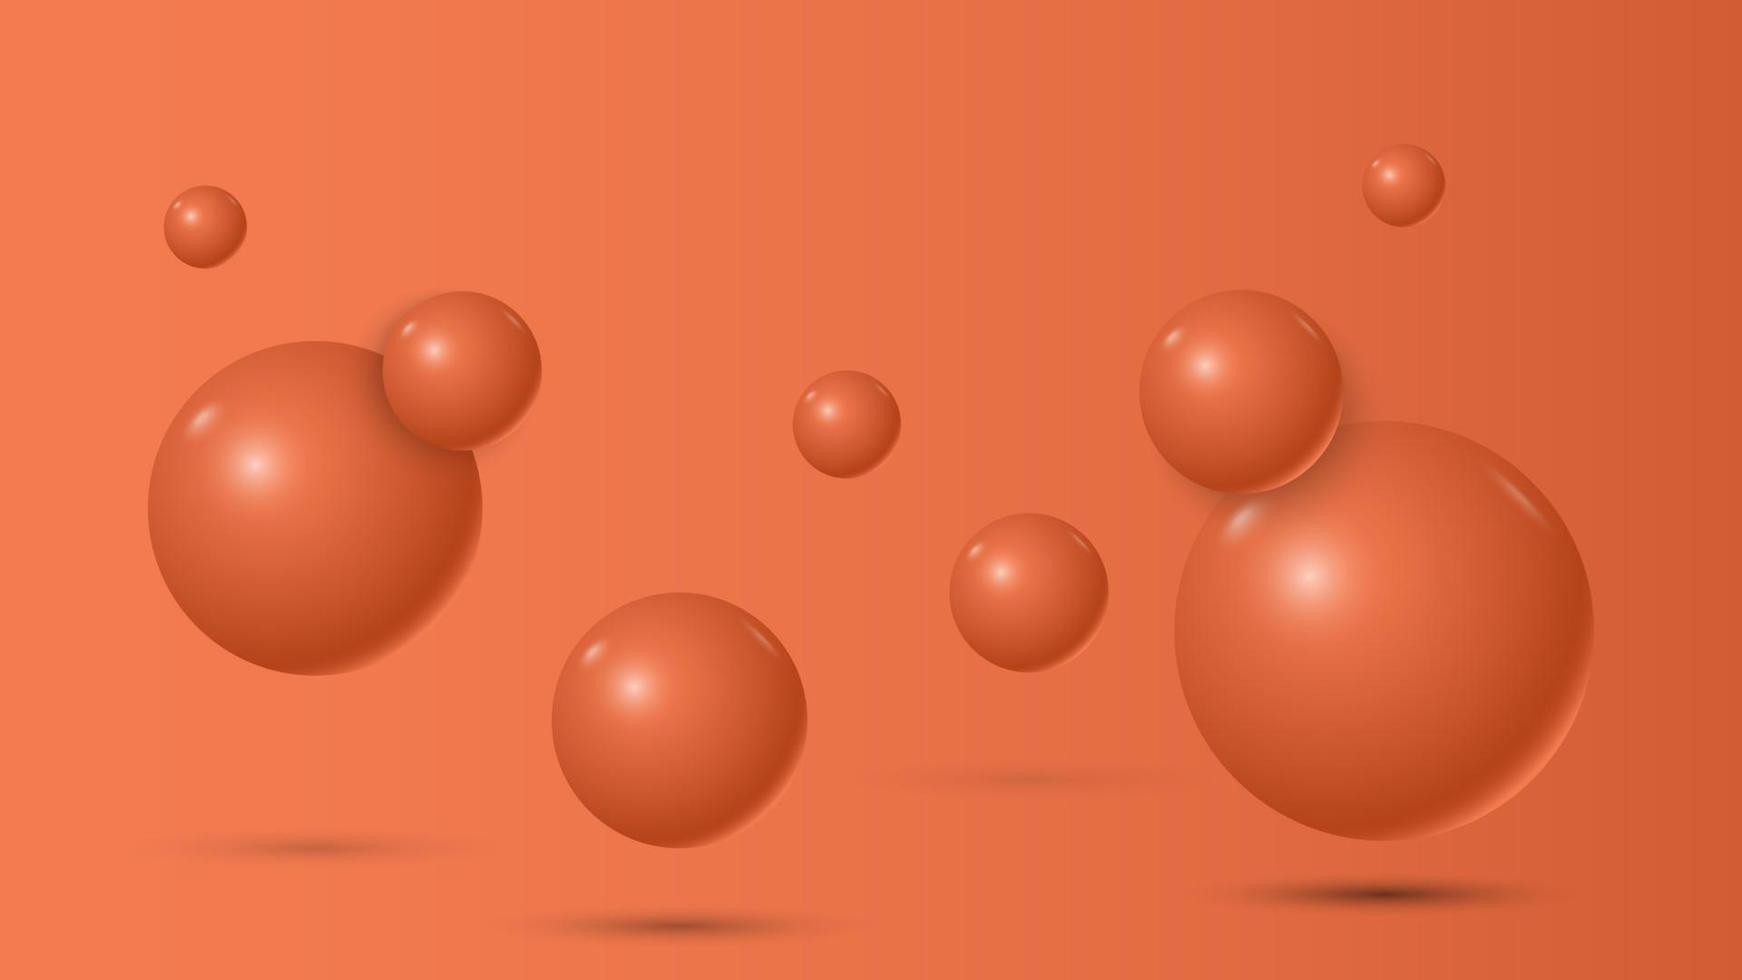 fundo 3d abstrato de esferas laranja, ilustração vetorial vetor